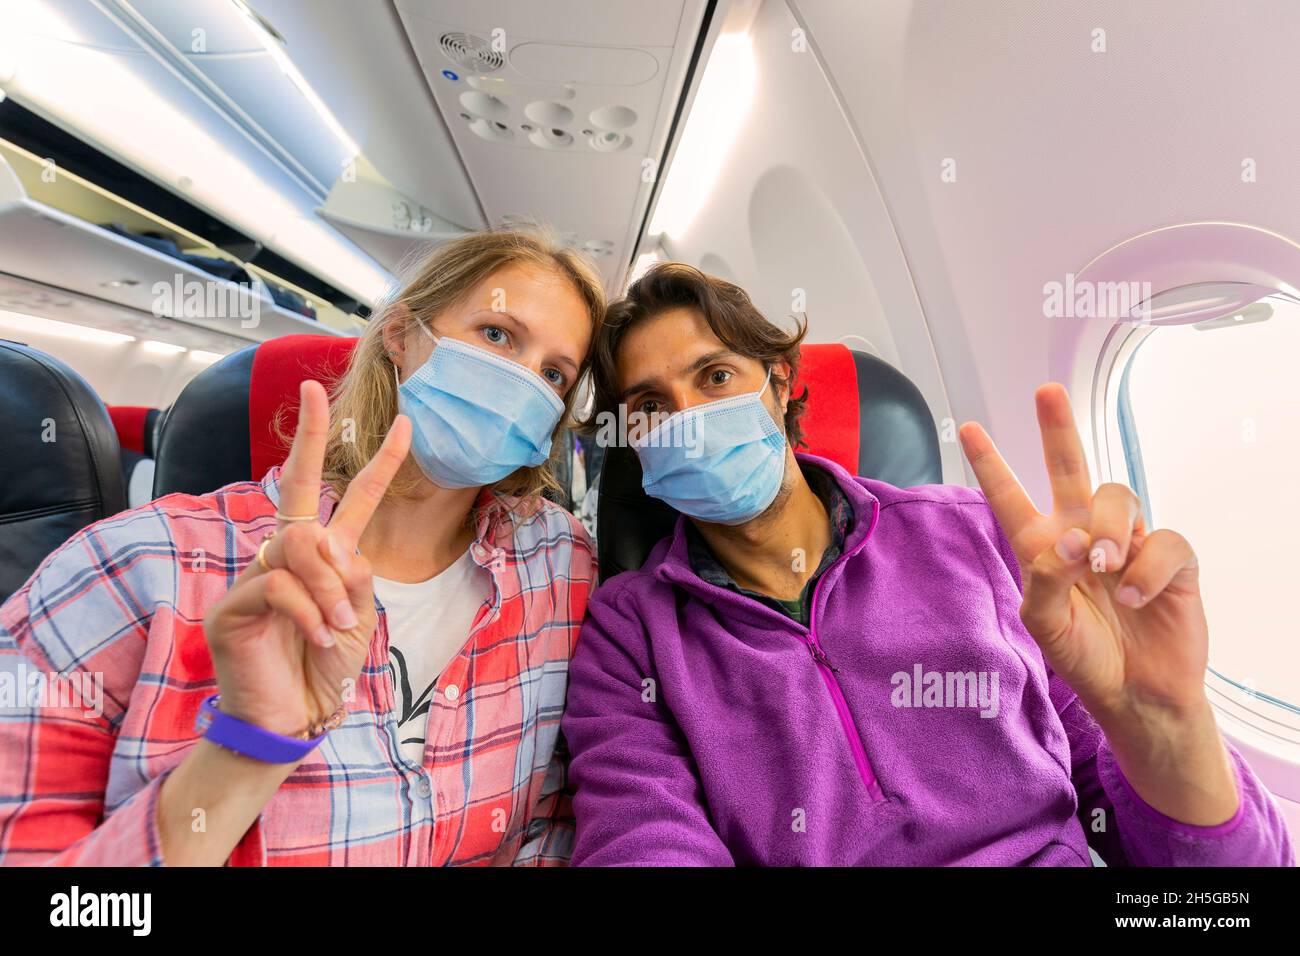 Das junge Paar trägt eine Gesichtsmaske für COVID-19-Schutz und sitzt auf einem Fenstersitz im Flugzeug, auf dem dem das V-förmige Schild mit zwei Fingern auf der linken Hand des Kamerasitzers zu sehen ist Stockfoto